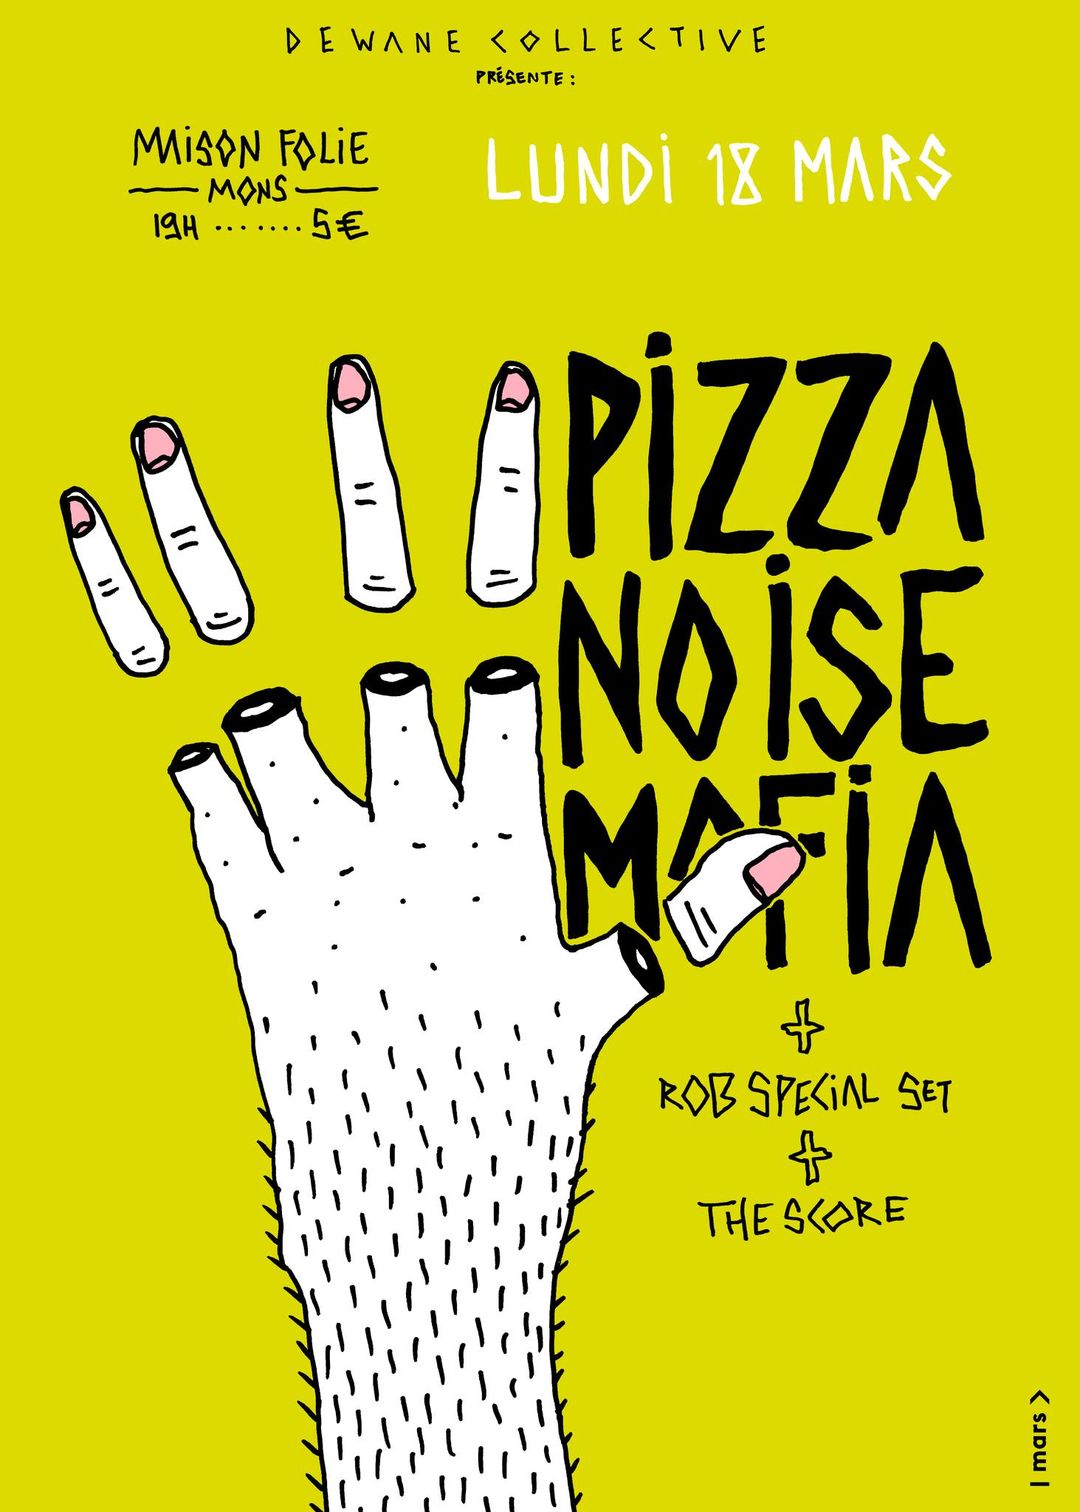 PIZZA NOISE MAFIA + ROB's SPECIAL SET + THE SCORE